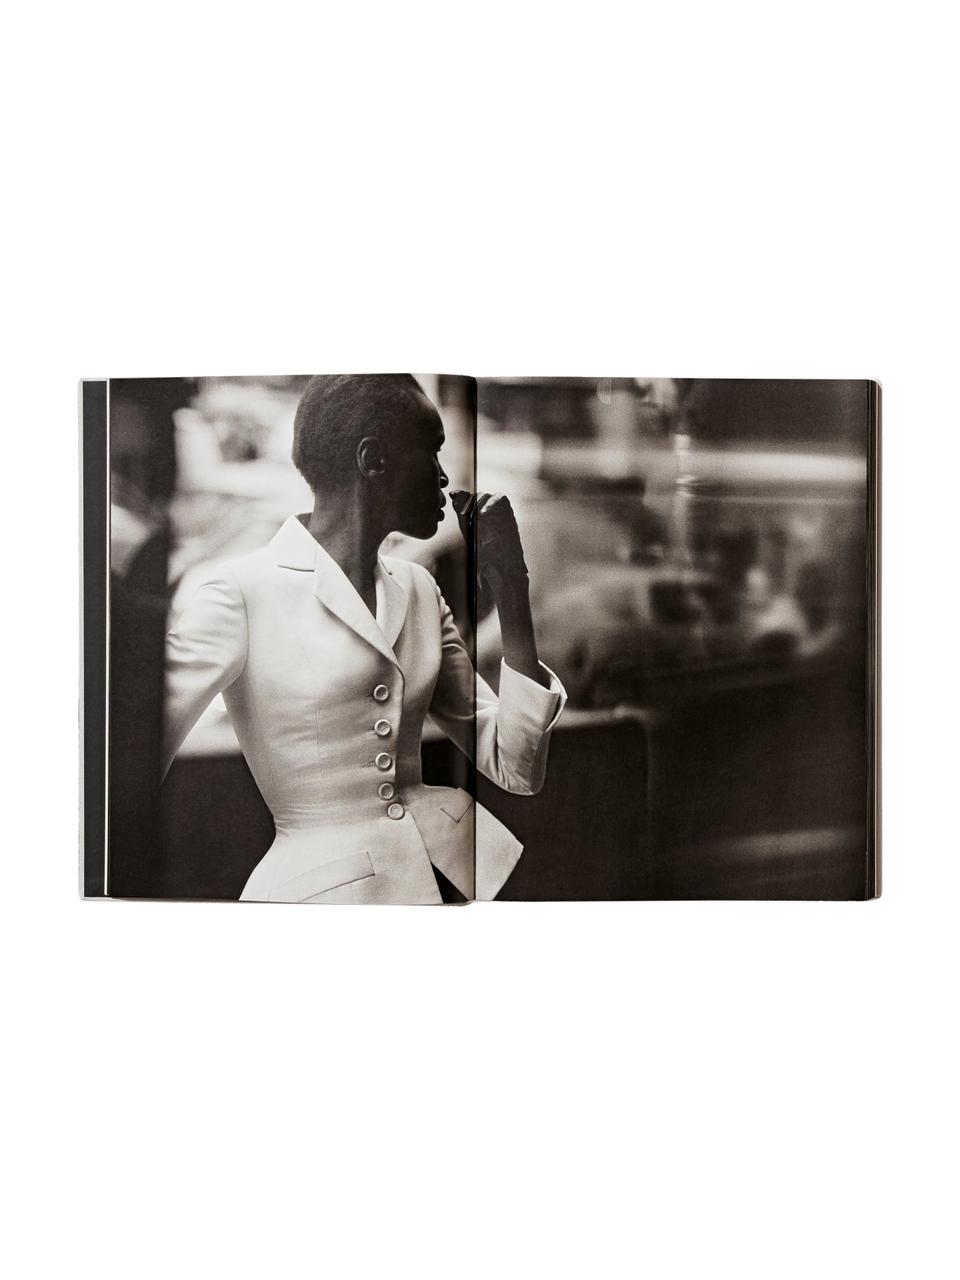 Libri illustrati in cofanetto Peter Lindbergh. Dior, Carta, copertina rigida, Peter Lindbergh. Dior, in un cofanetto, Larg. 28 x Lung. 37 cm